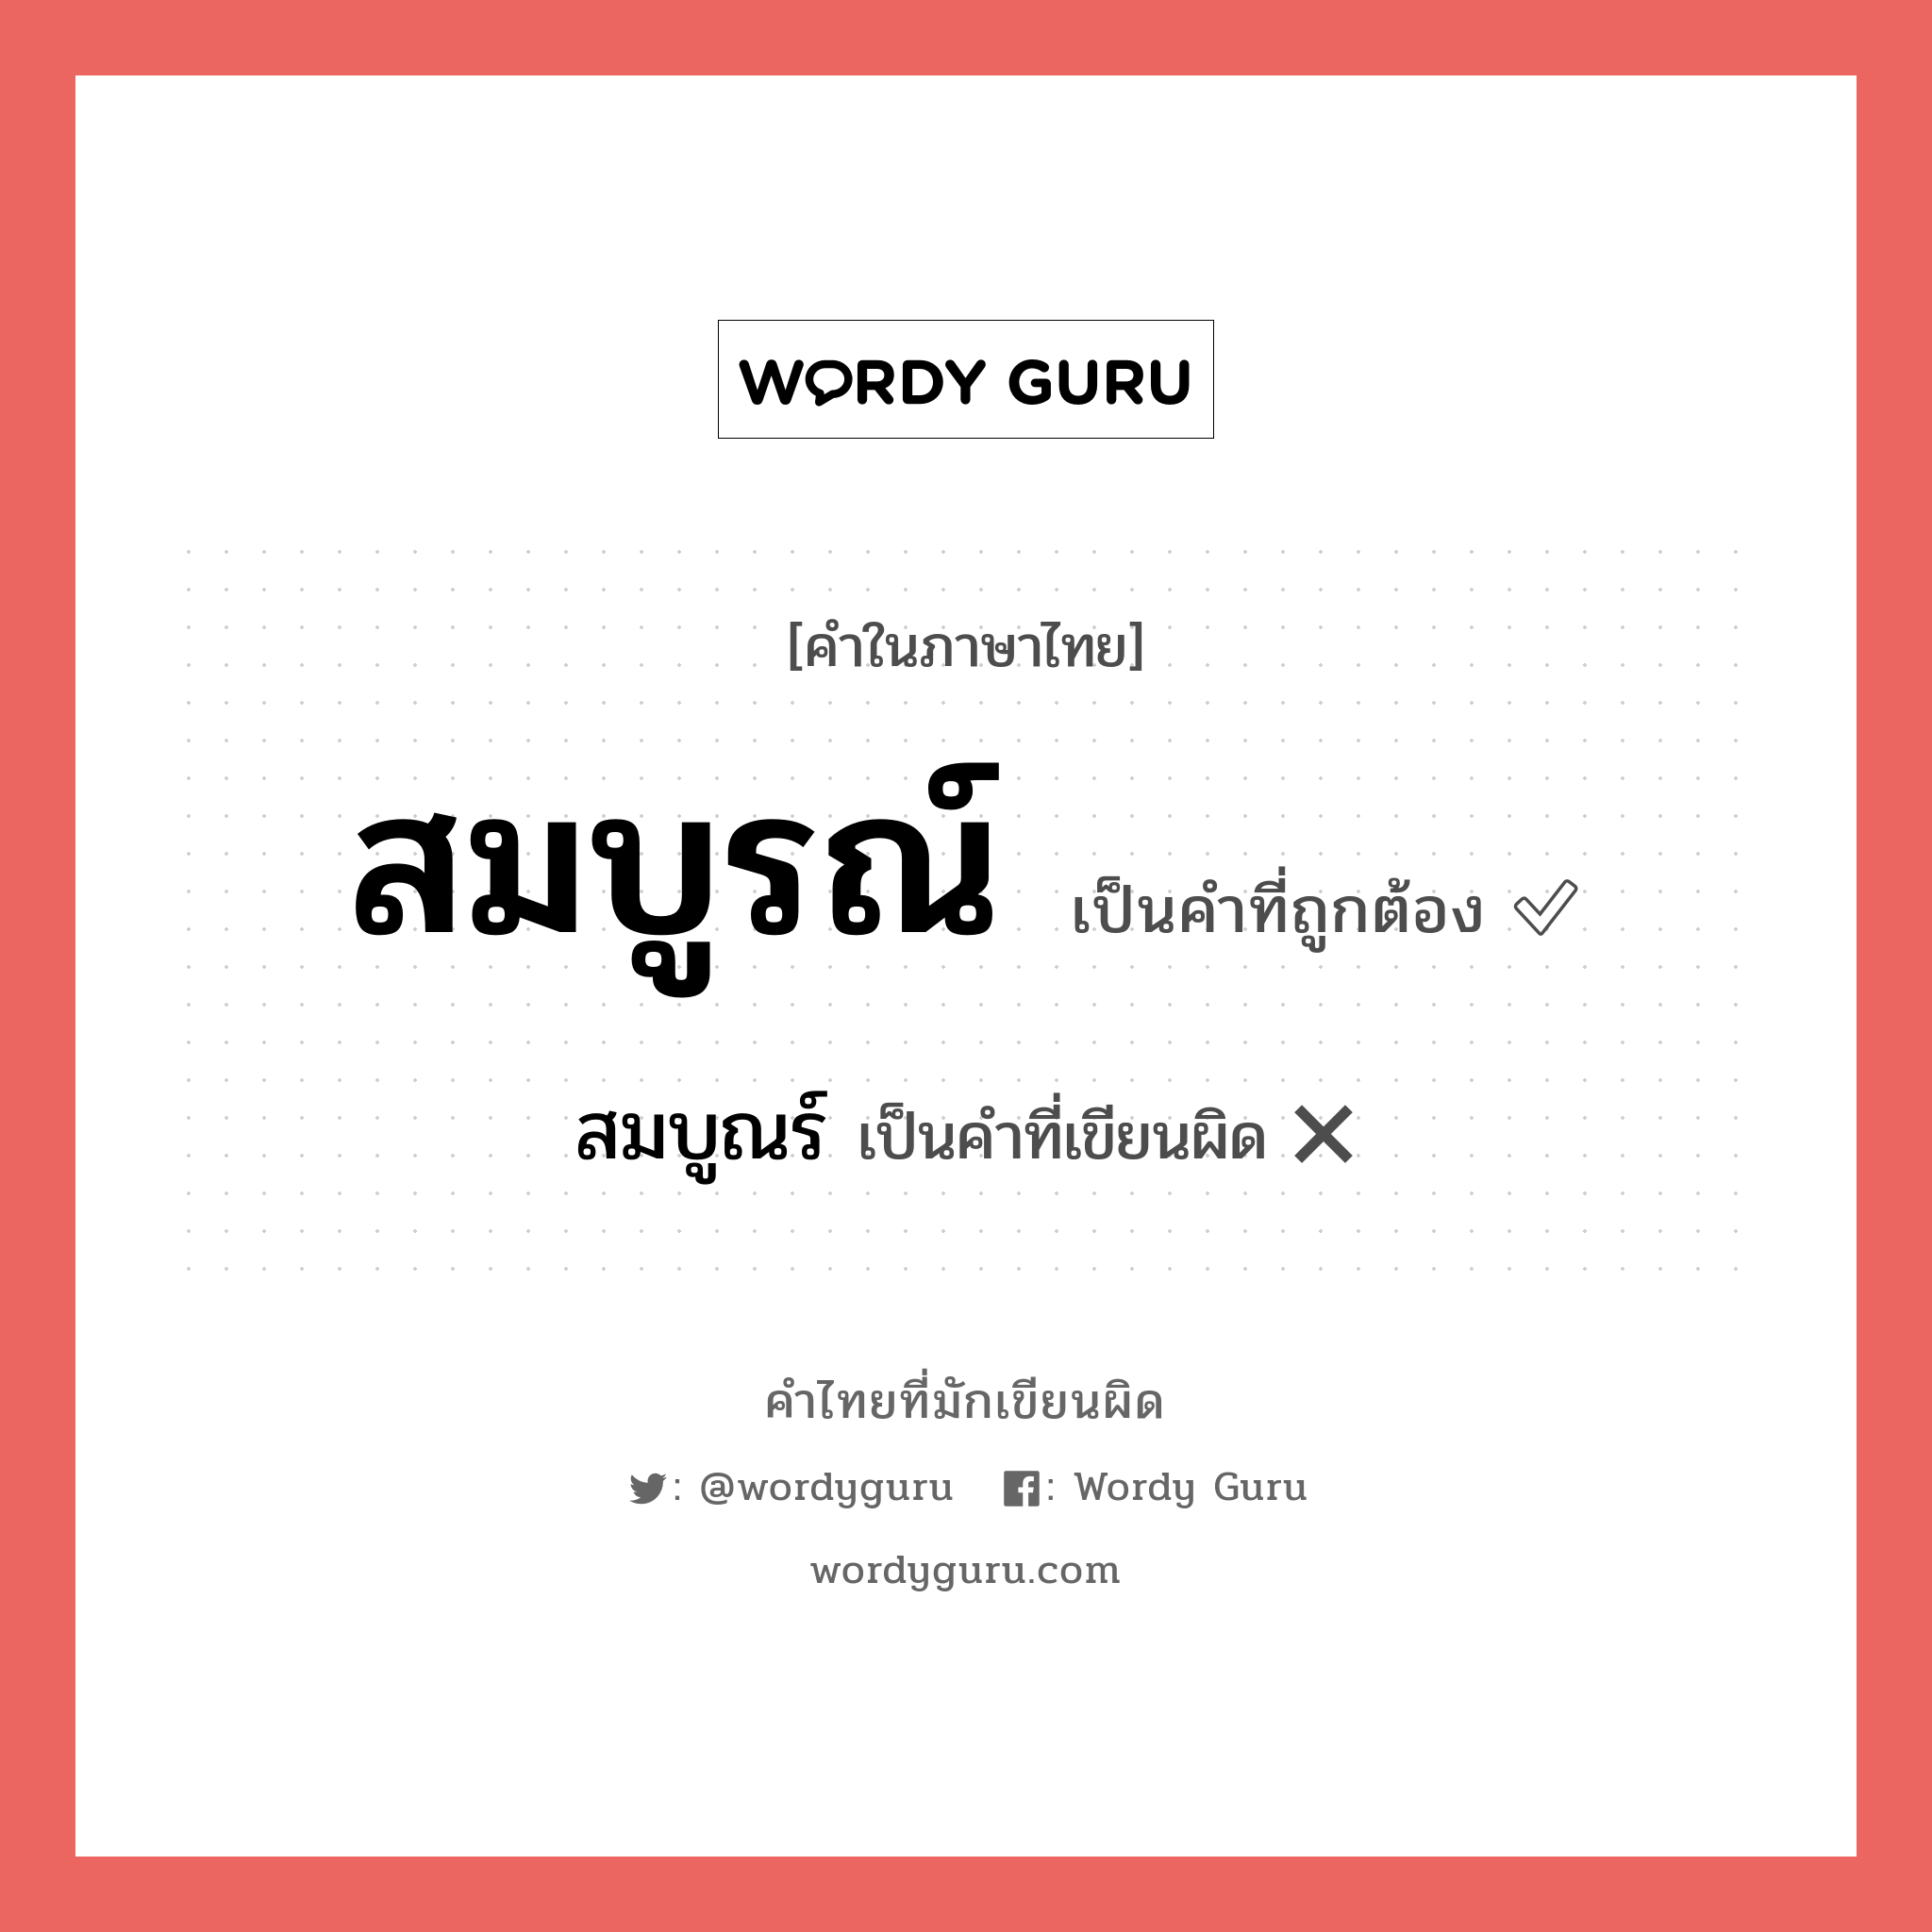 สมบูรณ์ หรือ สมบูร เขียนยังไง? คำไหนเขียนถูก?, คำในภาษาไทยที่มักเขียนผิด สมบูรณ์ คำที่ผิด ❌ สมบูณร์